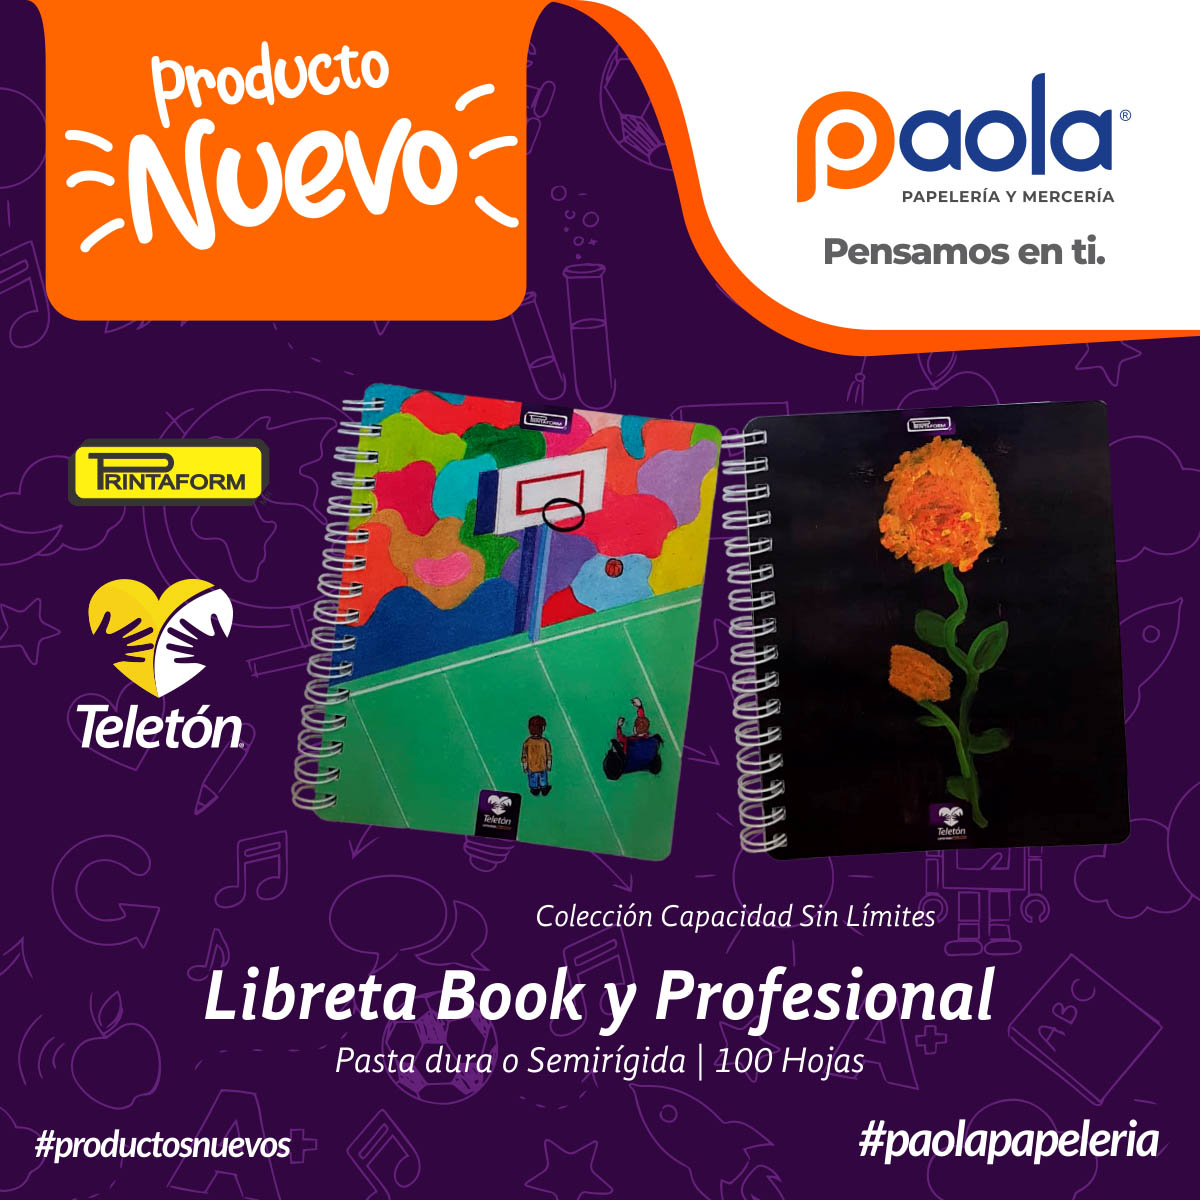 Libretas Book y Profesional Printaform 